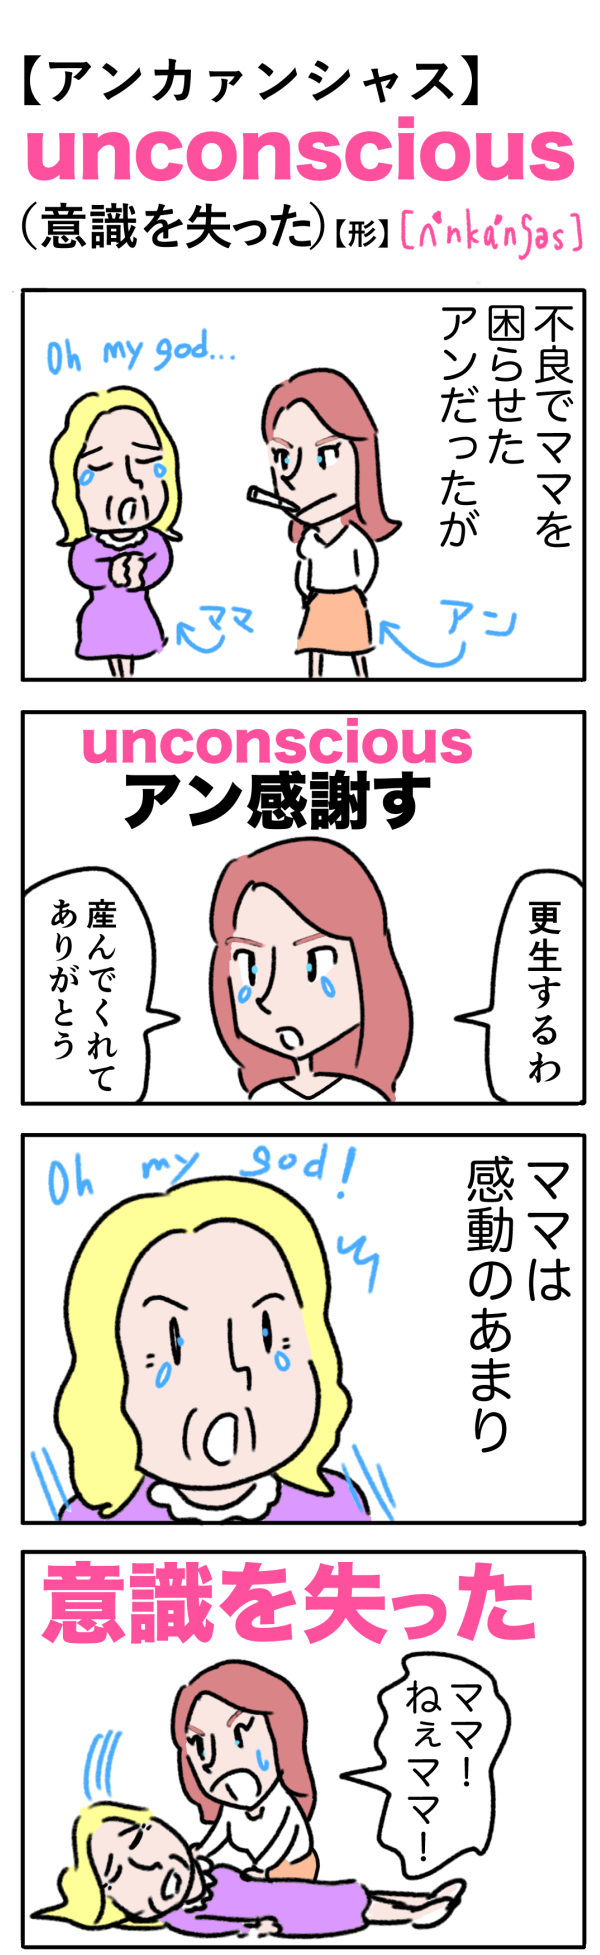 unconscious（意識を失った）の語呂合わせ英単語